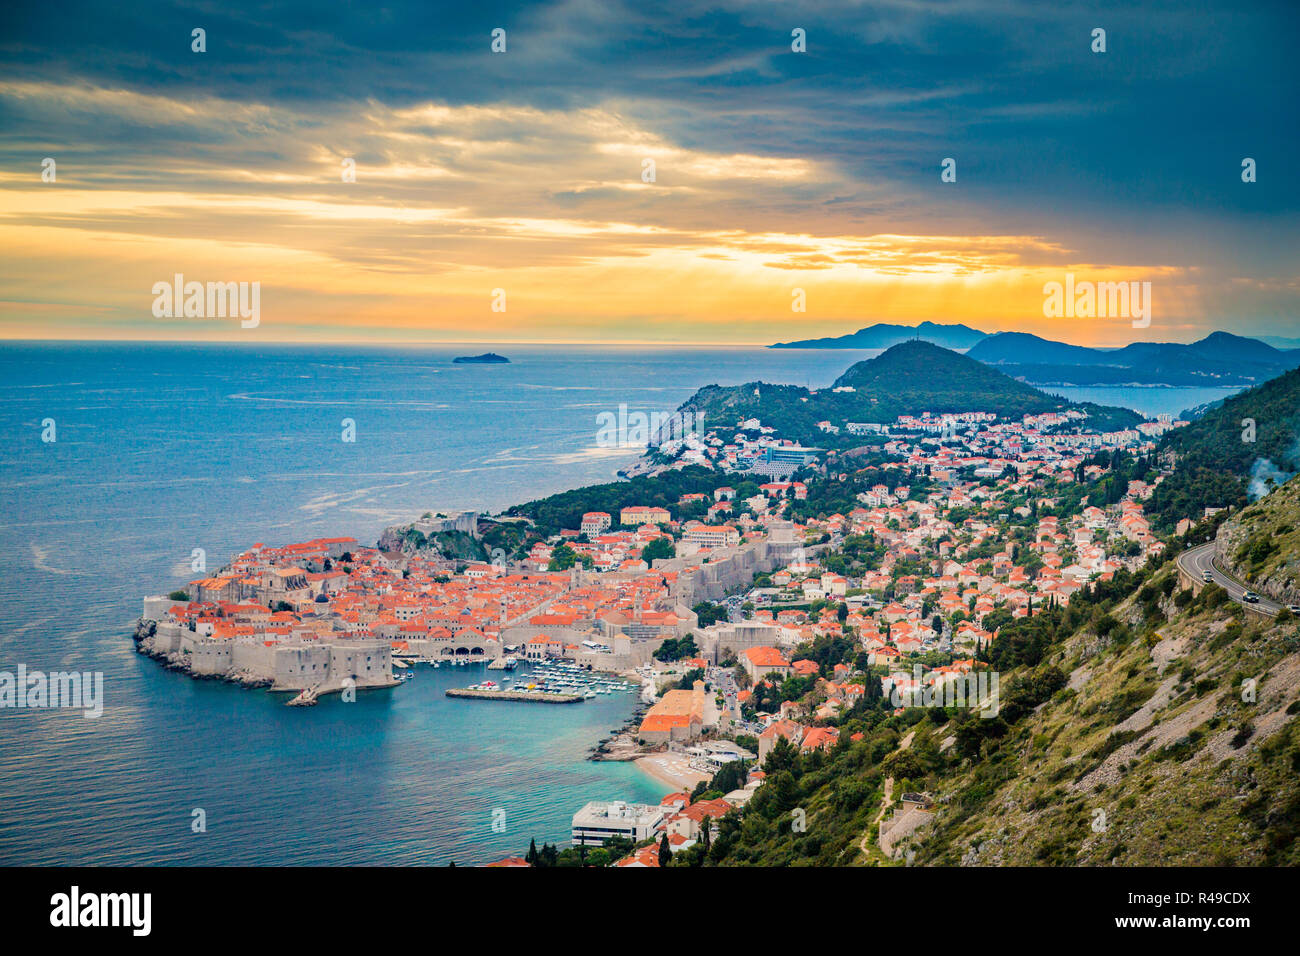 Panoramica vista aerea del centro storico di Dubrovnik, una delle più famose destinazioni turistiche del Mar Mediterraneo, nella splendida golden eve Foto Stock